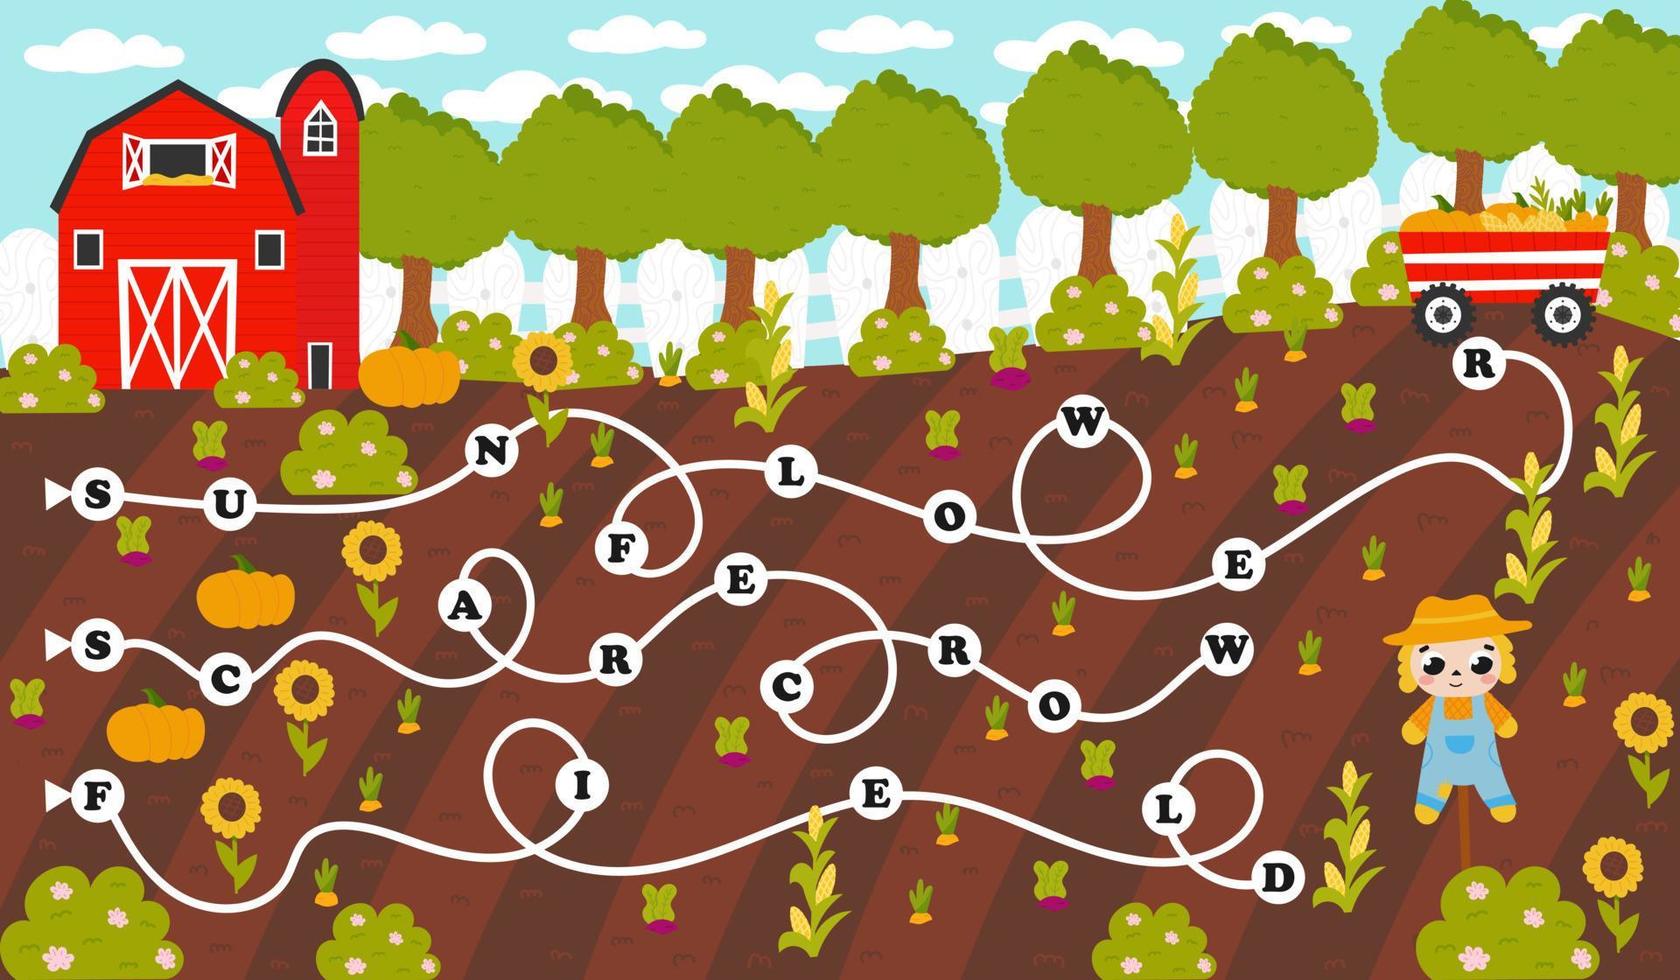 colorato parola labirinto per bambini con inglese agricoltura a tema parole nel cartone animato stile con raccolta, agricoltura, spaventapasseri vettore